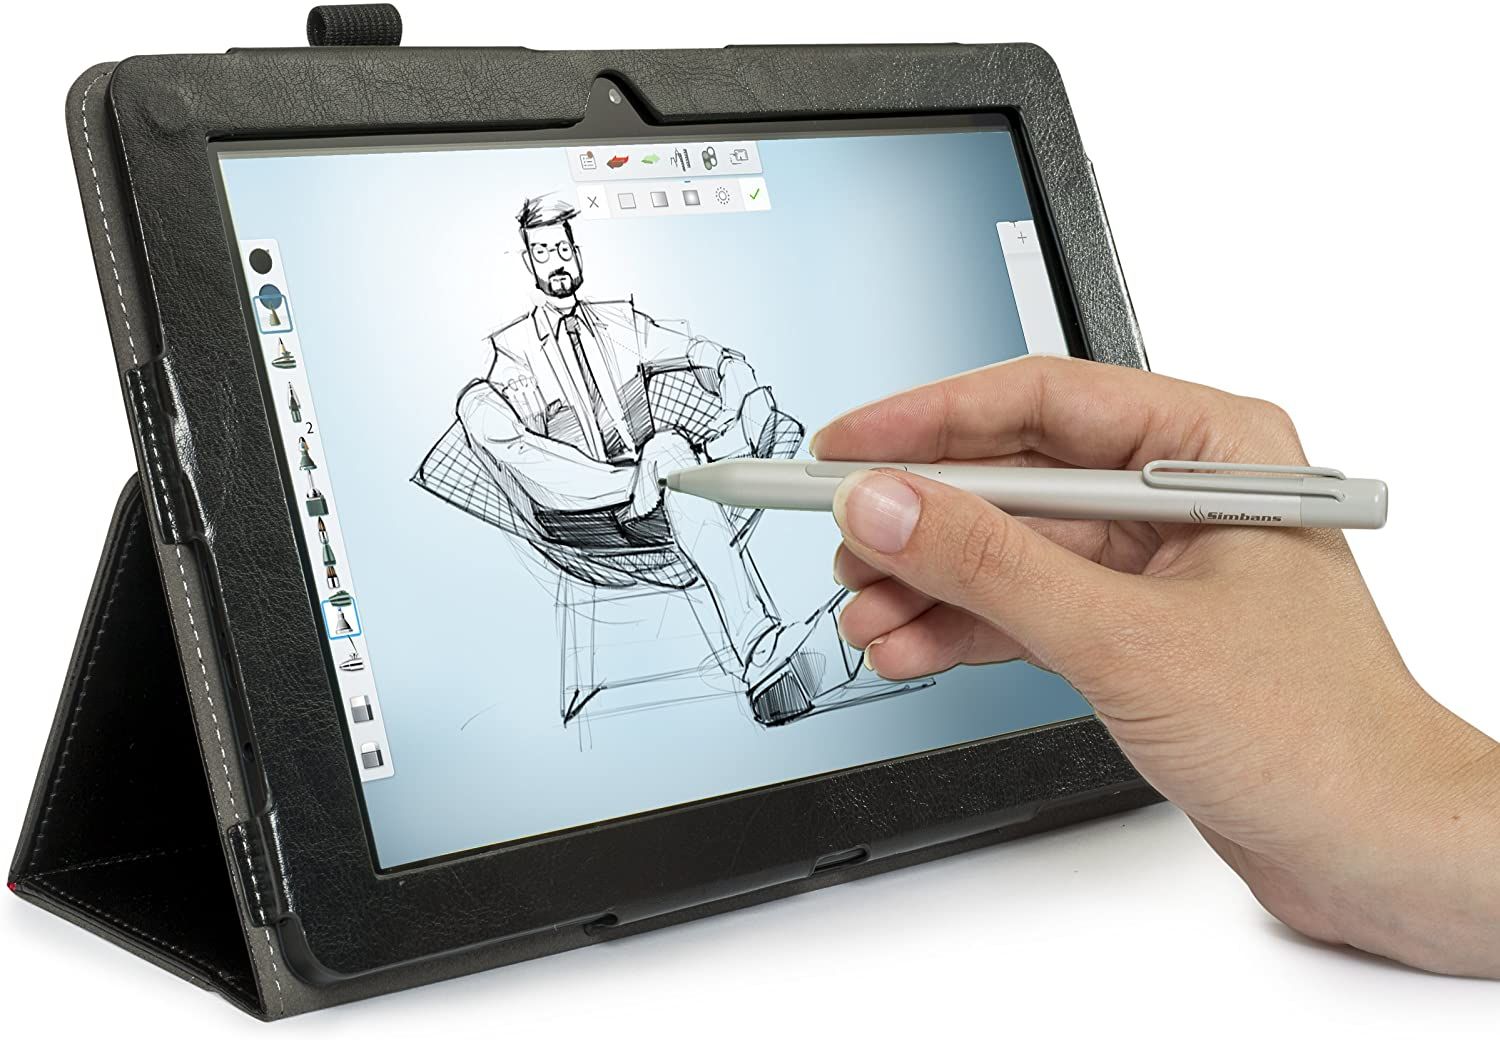 Pen drawing pad. Планшет для рисования baibian LCD цветной 1989-4. Графический планшет самсунг. Планшет для художника. Географический планшет для рисования с ручкой.